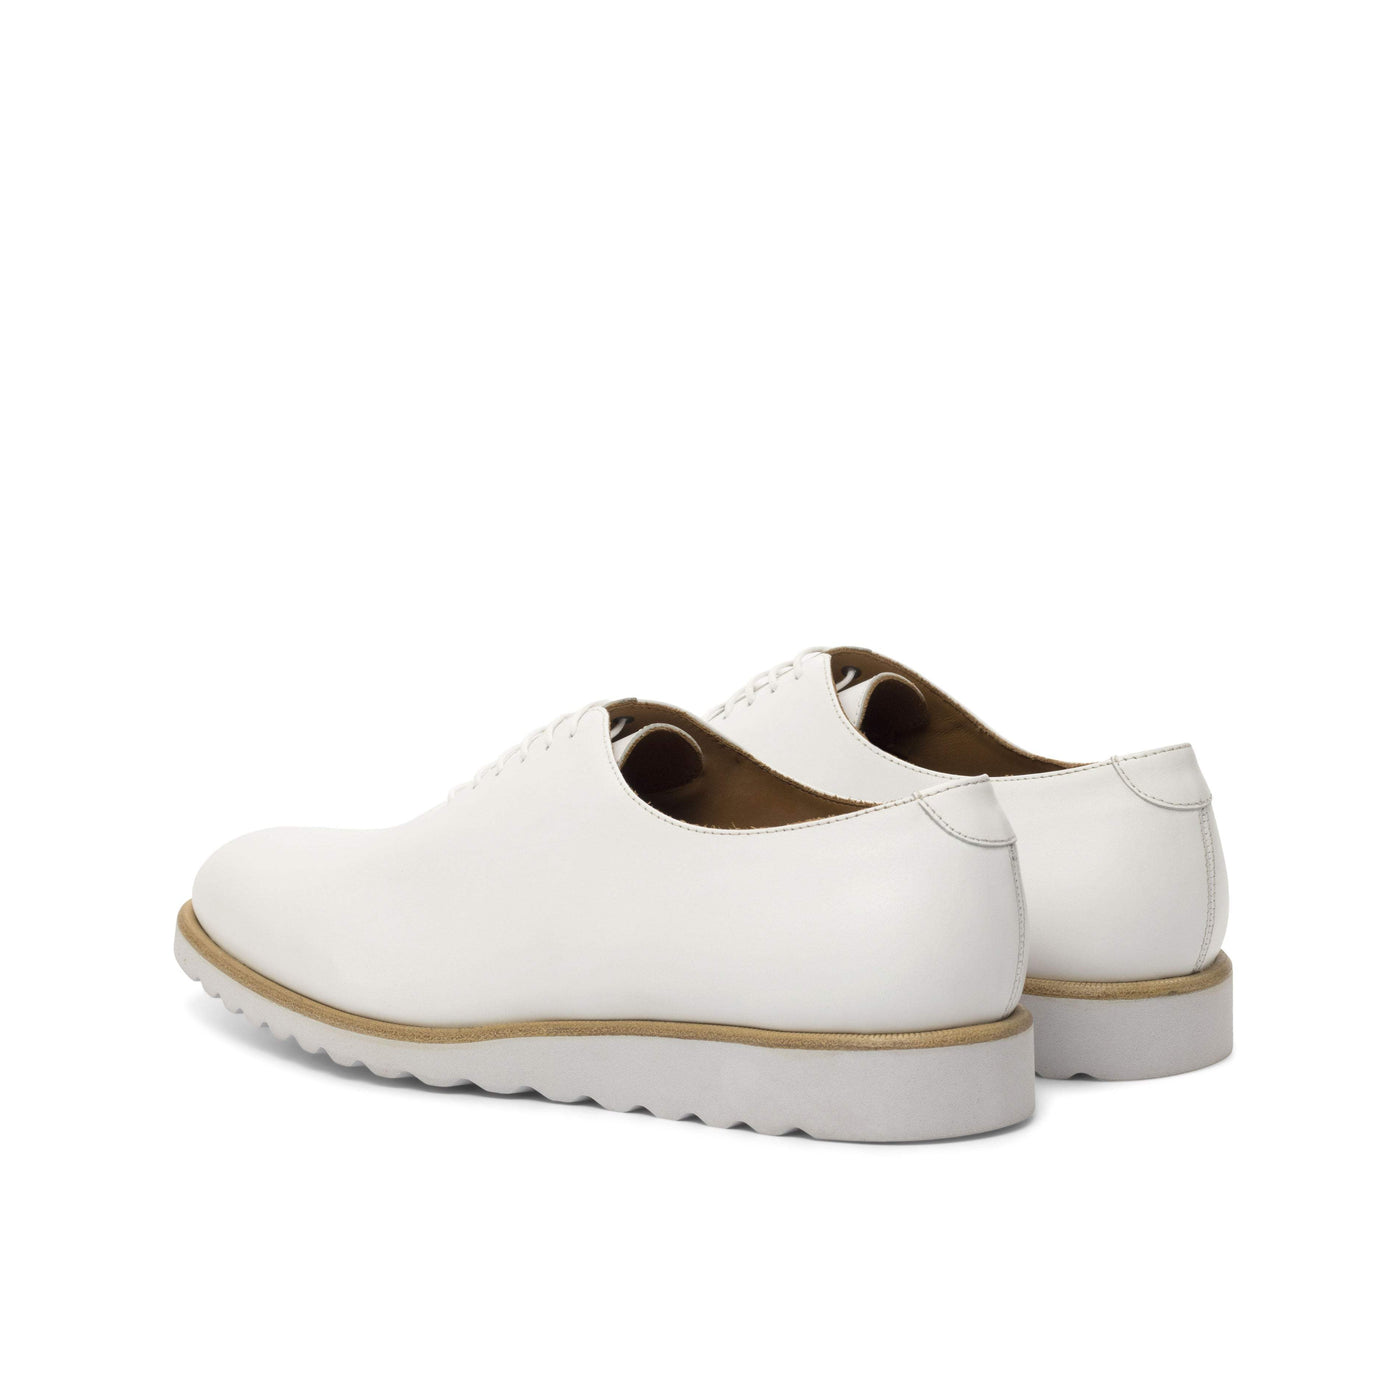 Men's Wholecut Shoes Leather White 4755 4- MERRIMIUM